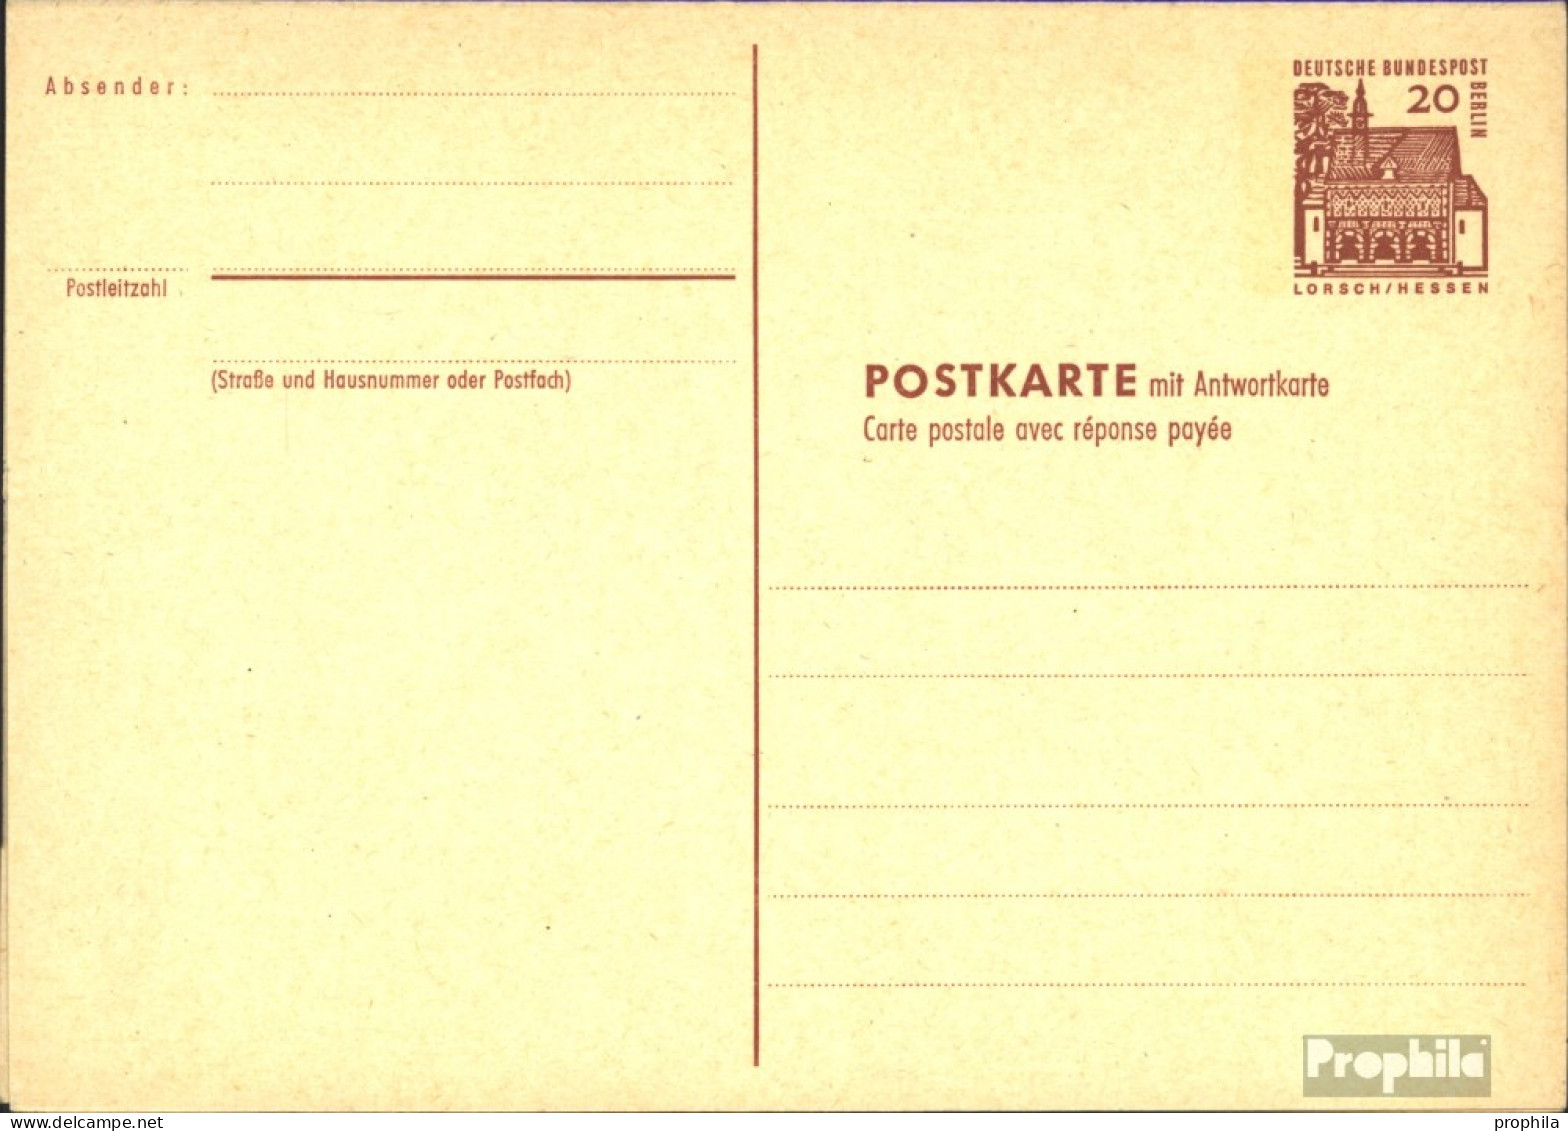 Berlin (West) P67 Amtliche Postkarte Gefälligkeitsgestempelt Gebraucht 1965 Dt. Bauwerke I - Postkarten - Gebraucht